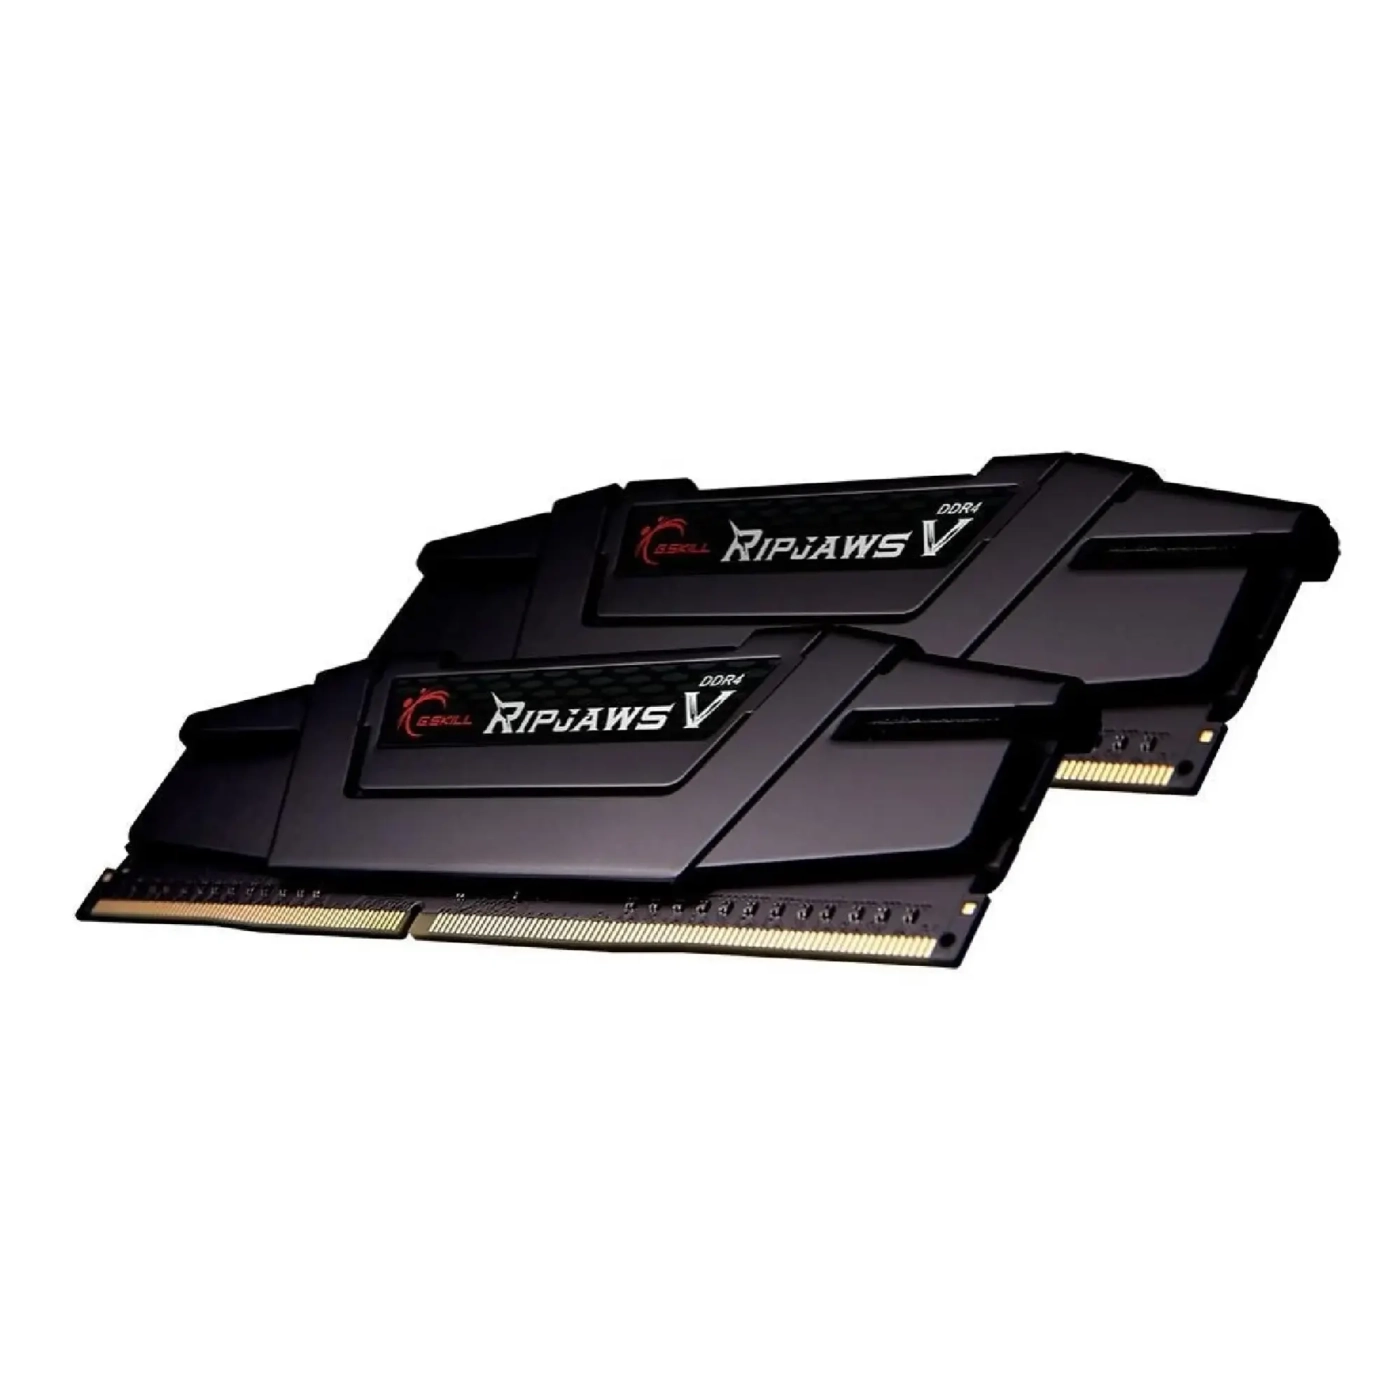 Купить Модуль памяти G.Skill Ripjaws V DDR4-3200 CL16-18-18-38 1.35V 64GB (2x32GB) - фото 2